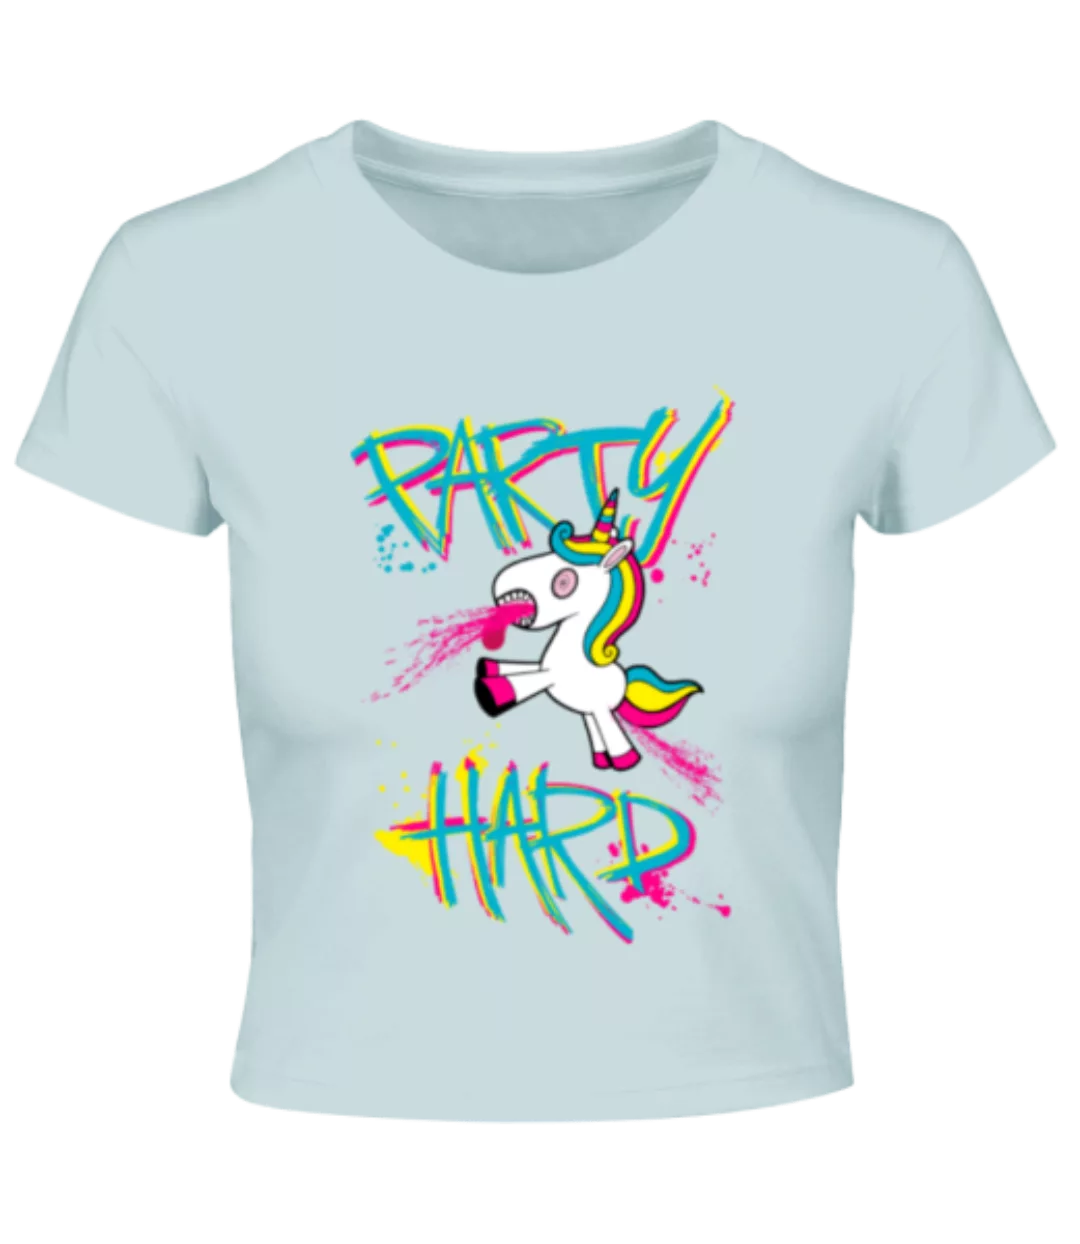 Party Hard Einhorn · Crop T-Shirt günstig online kaufen